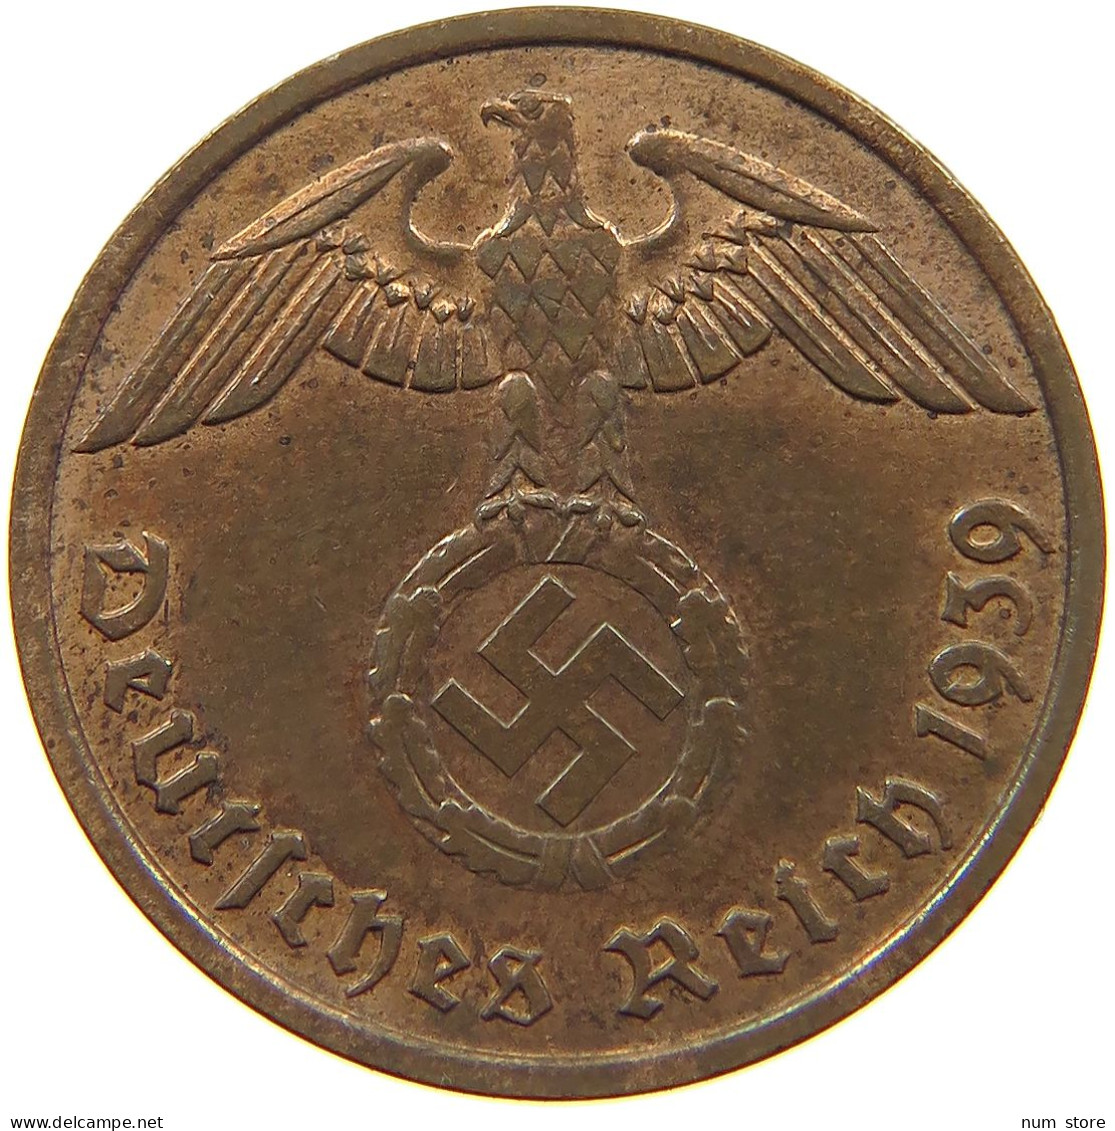 GERMANY 2 PFENNIG 1939 F TOP #c083 0009 - 2 Reichspfennig